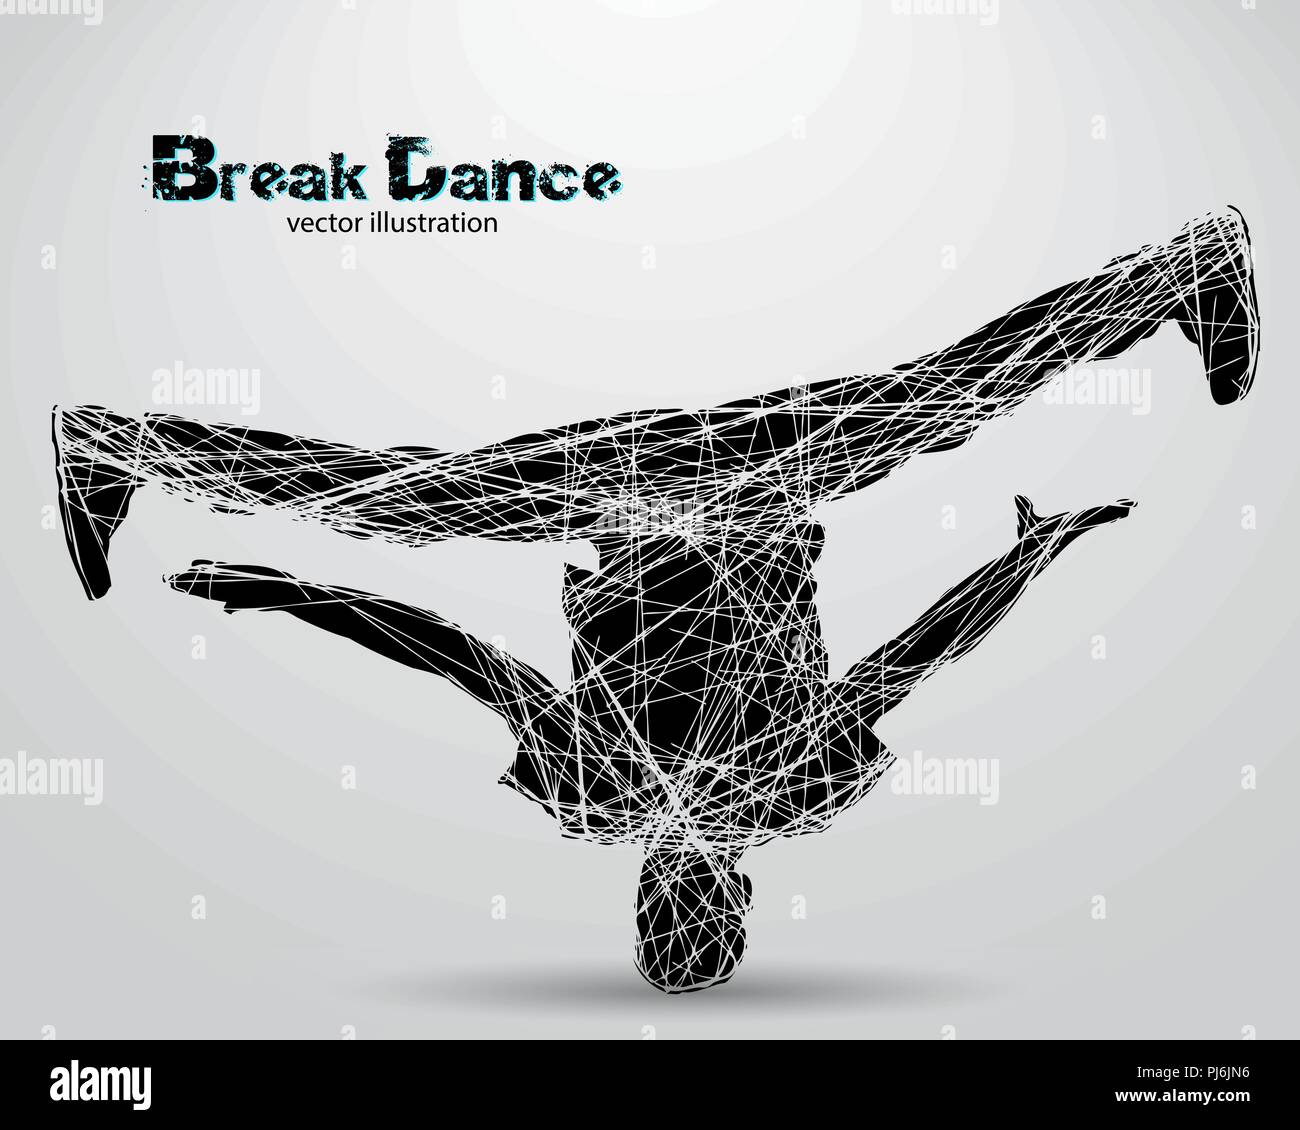 Silhouette der Breakdancer. Hintergrund und Text auf einem separaten Layer, Farbe kann mit einem Klick geändert werden. Stock Vektor